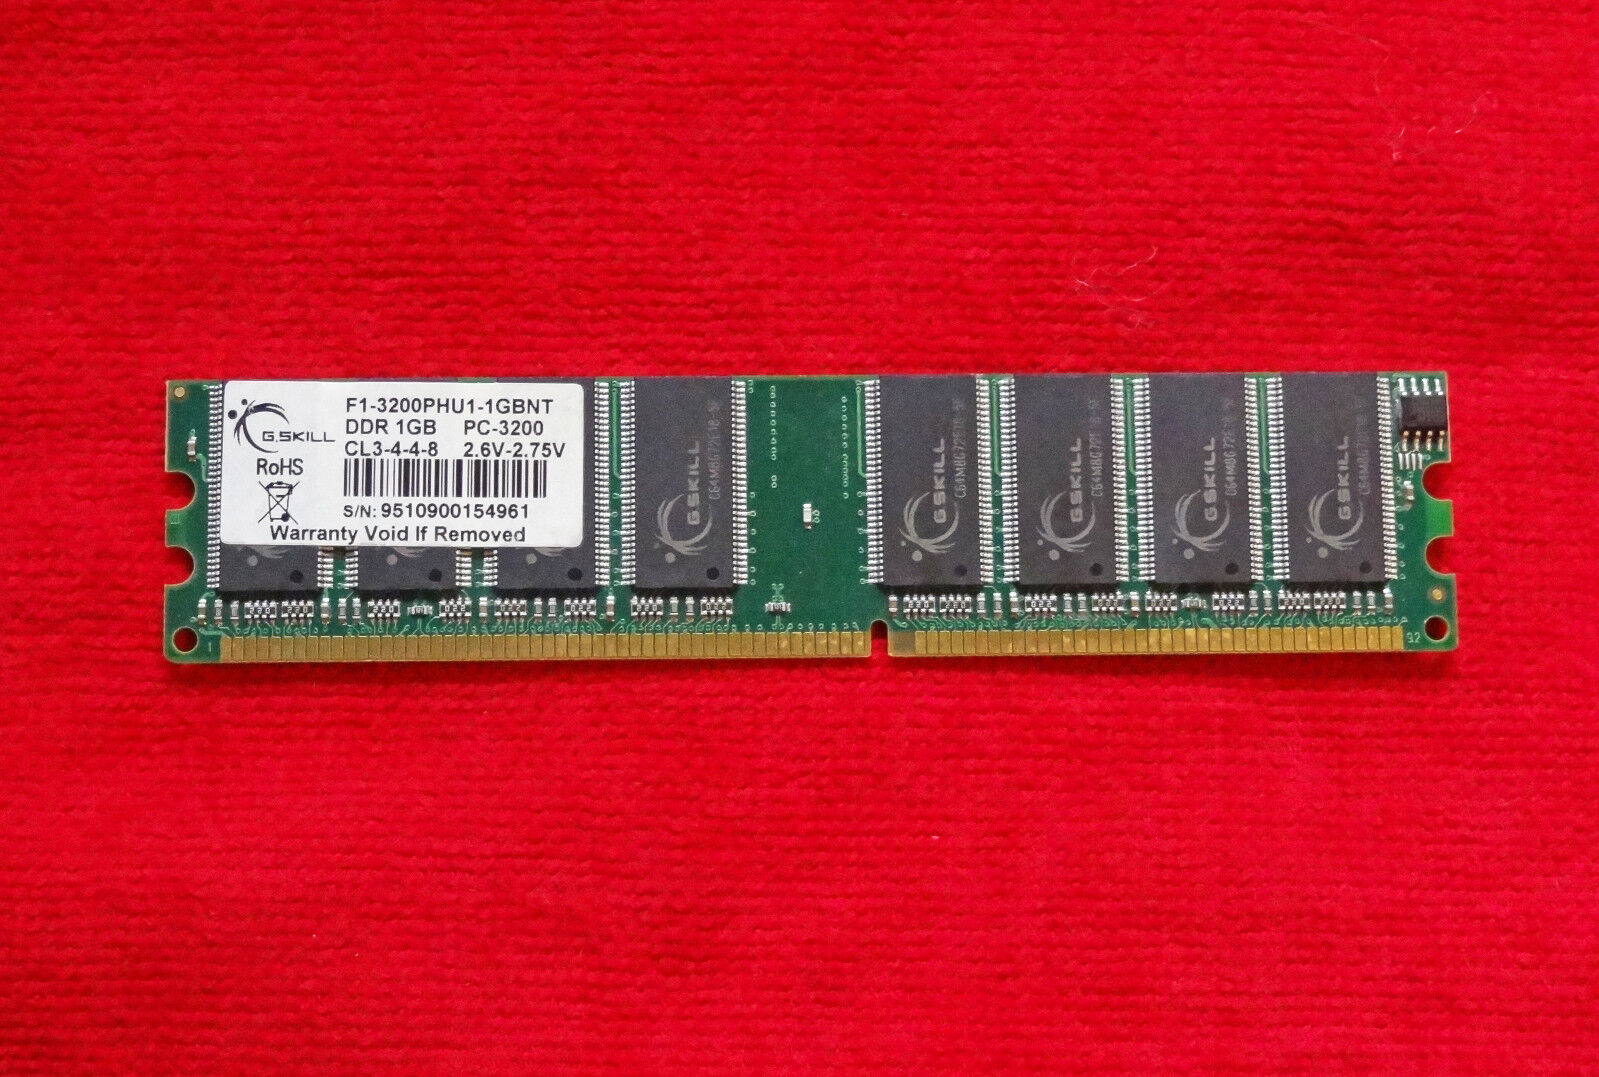 G.Skill Value RAM 1GB DDR400 PC3200 F1-3200PHU1-1GBNT 